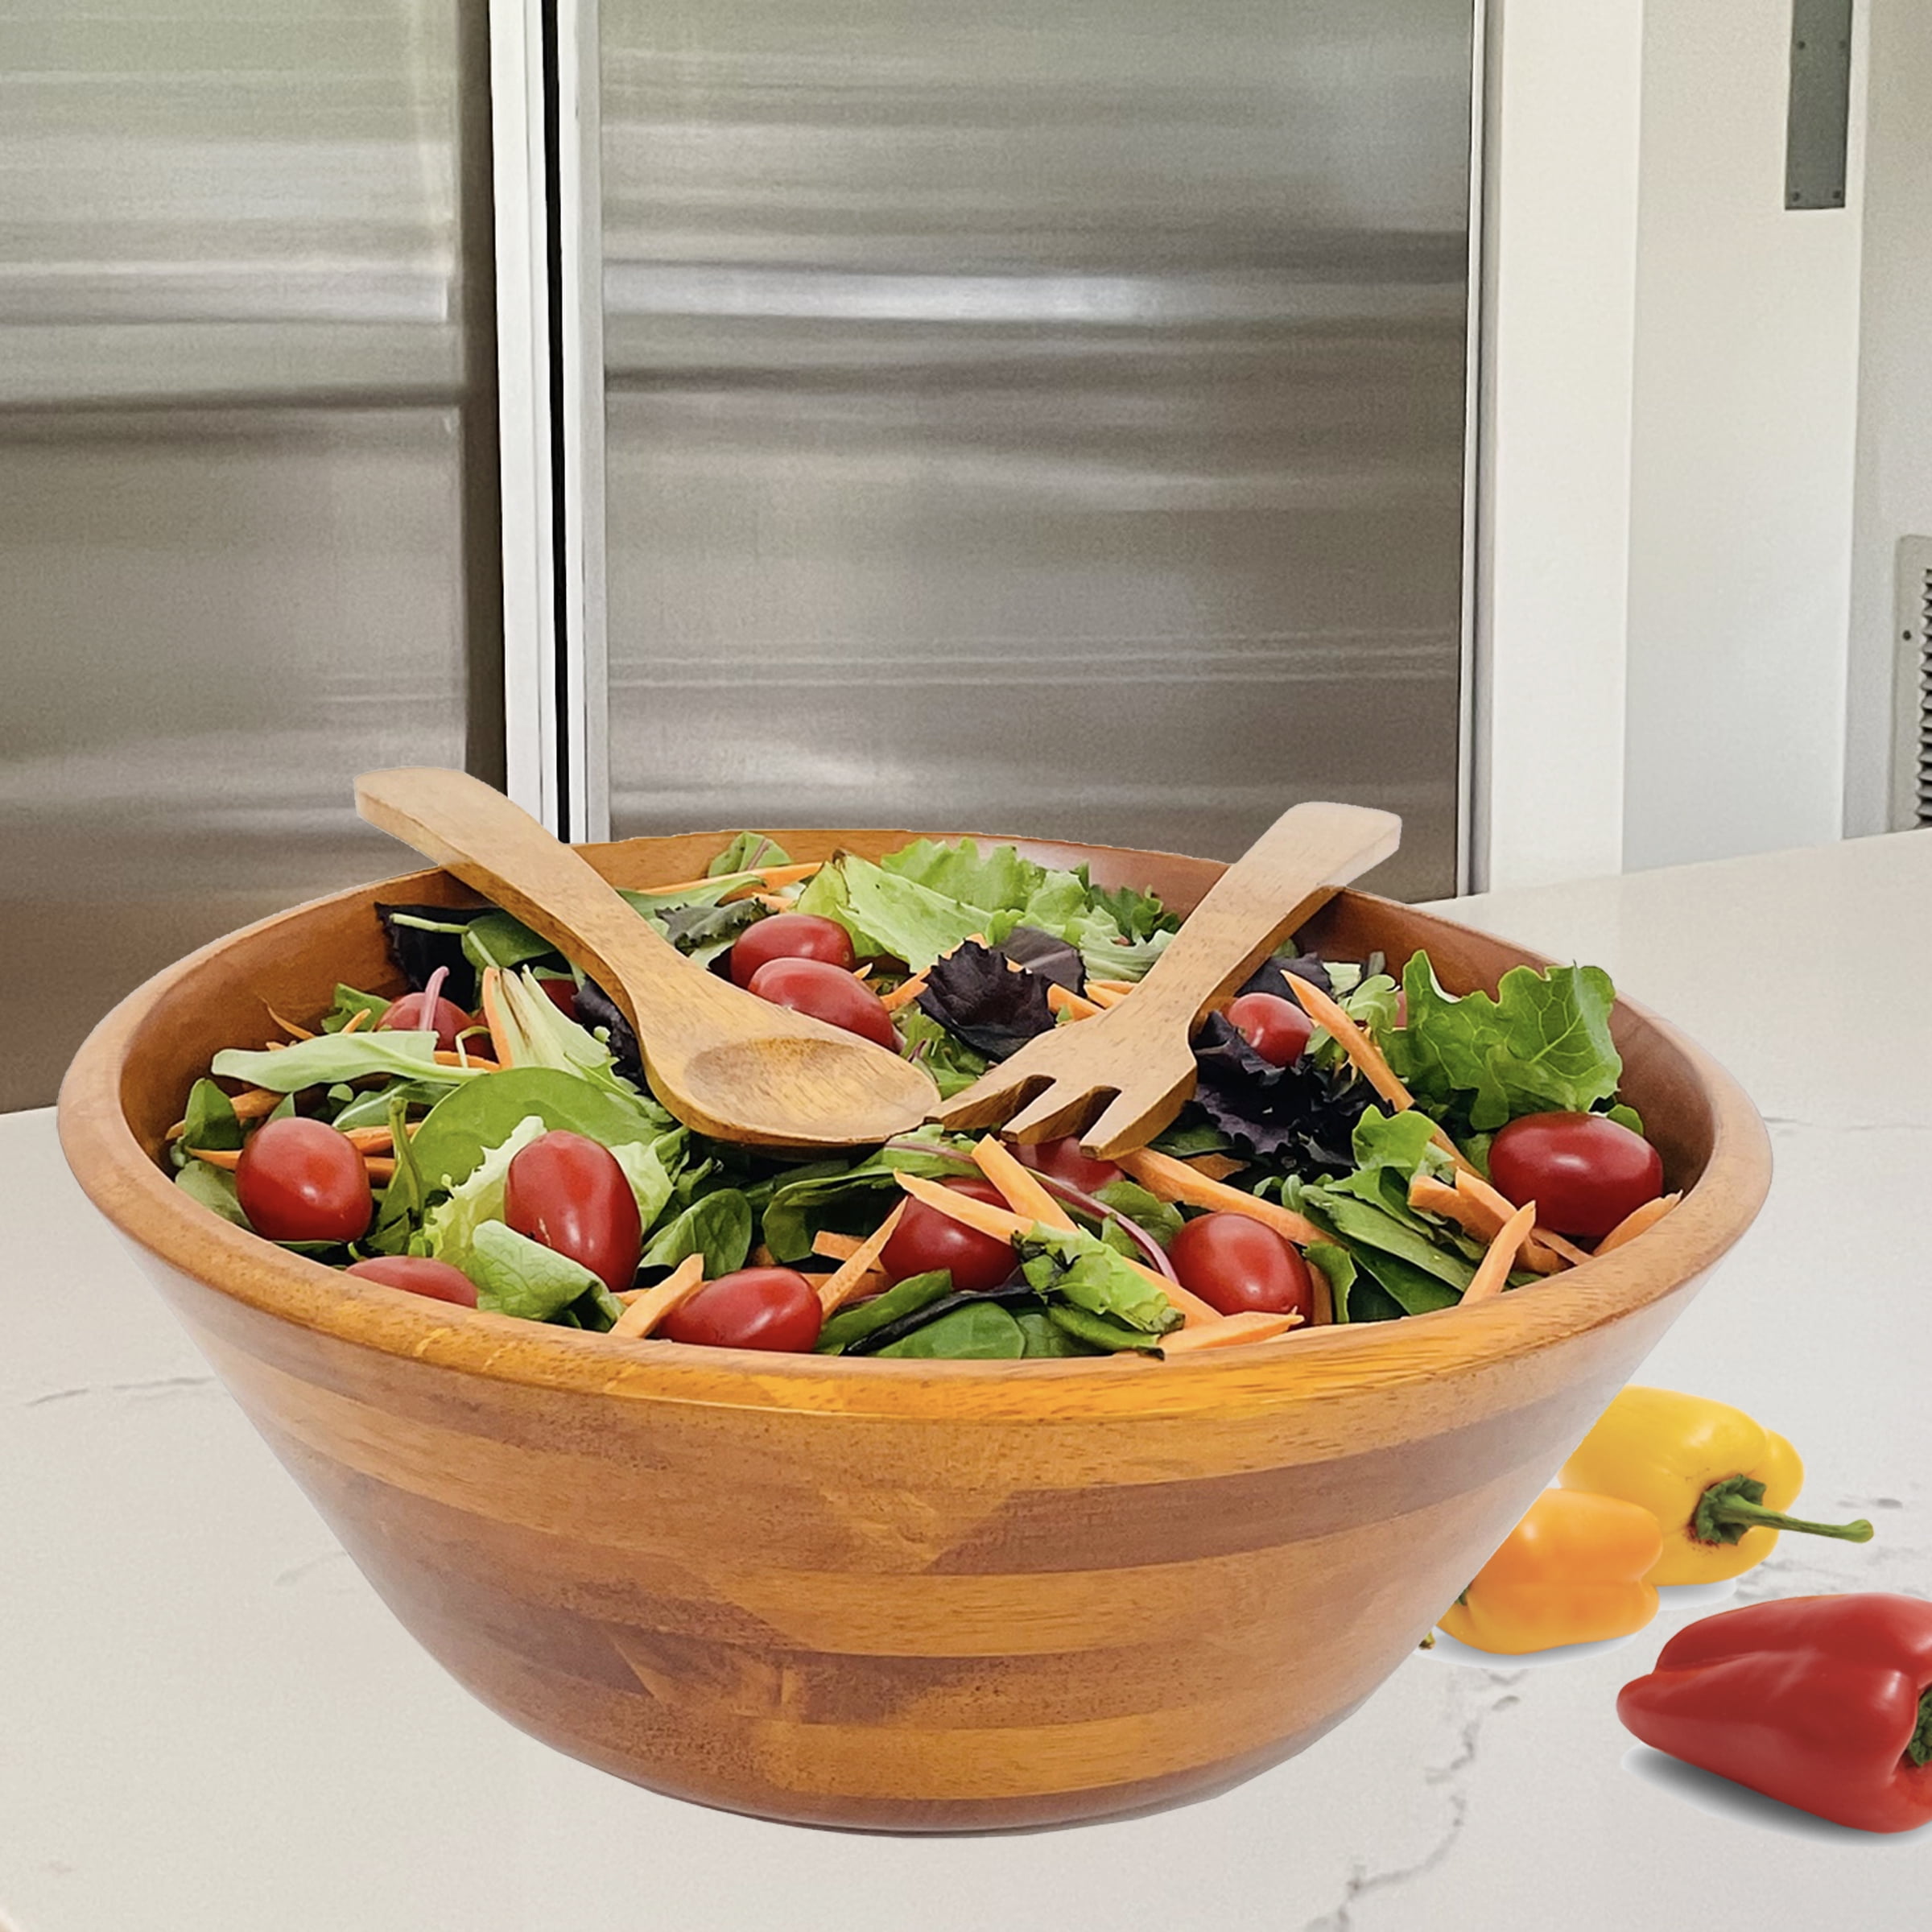 3-Piece Salad Shaker, Housewares